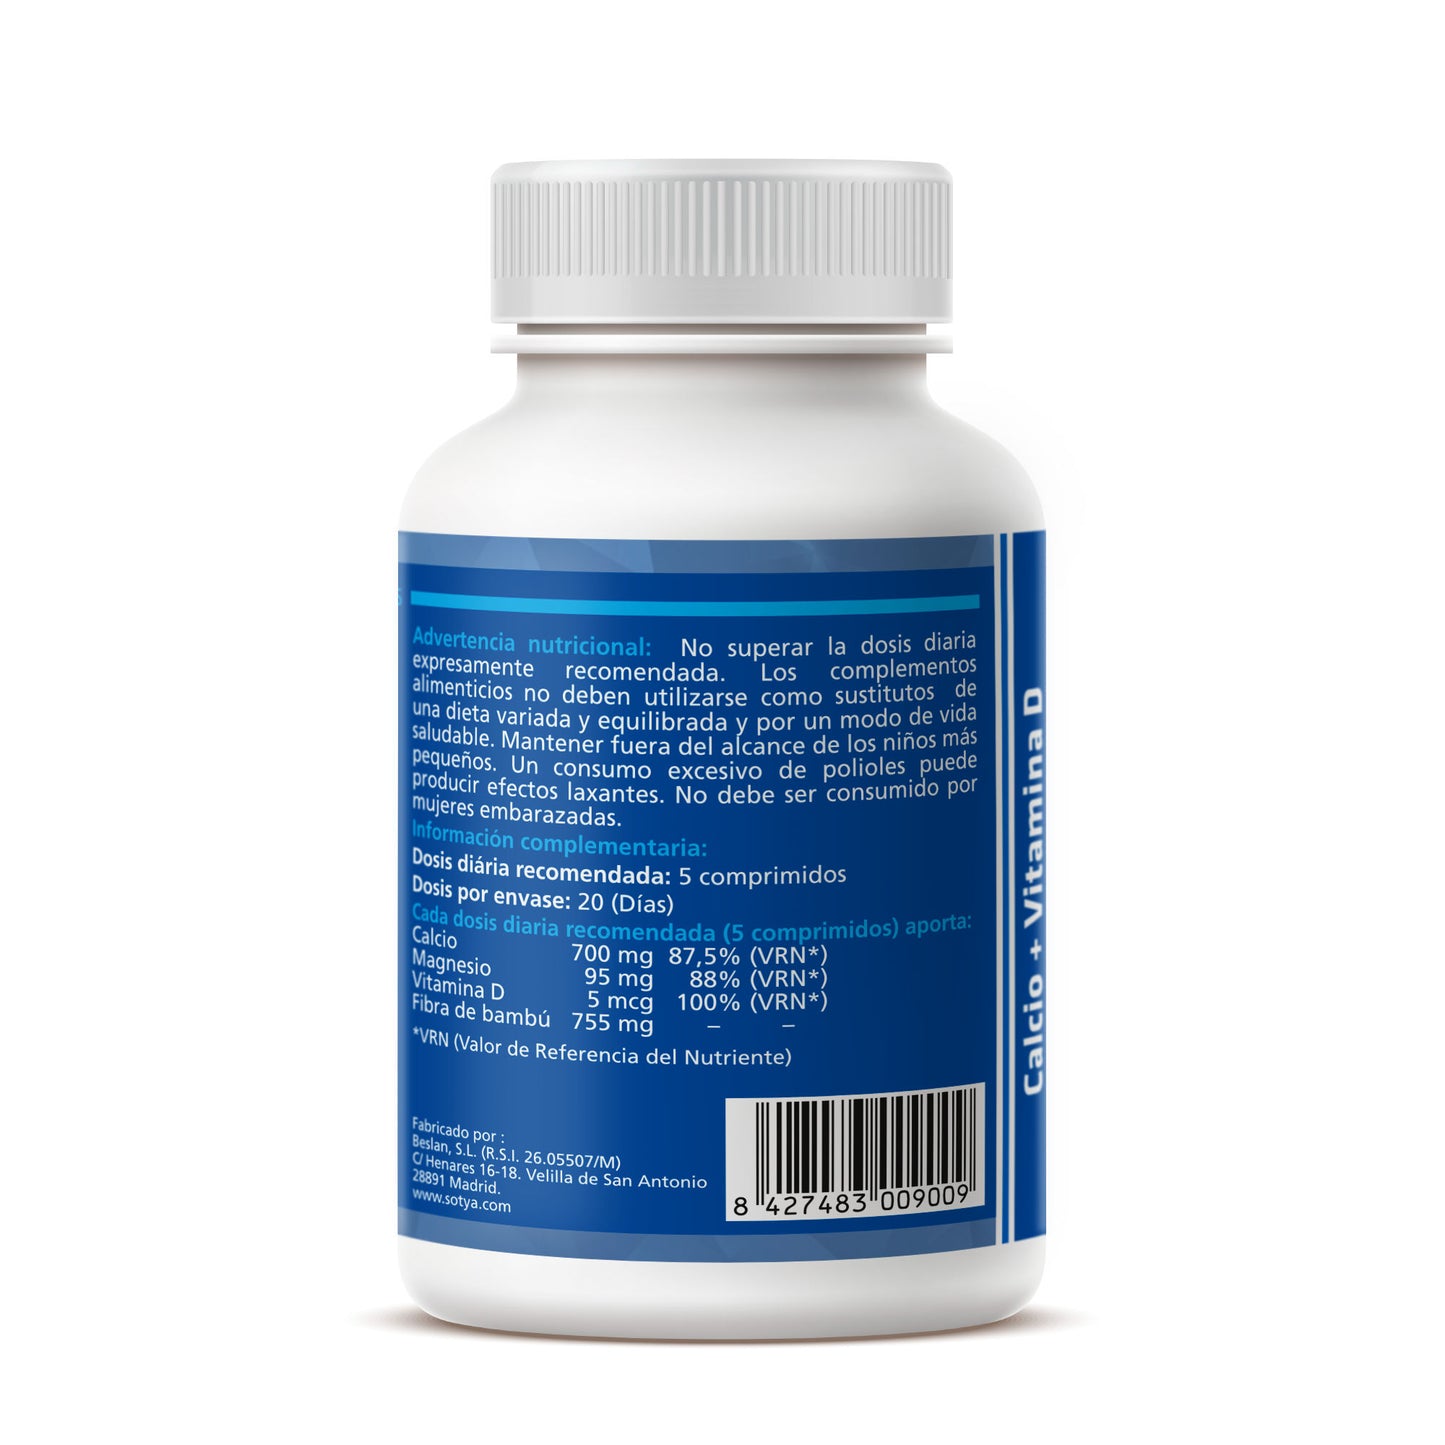 Calci + Magnesi + Vitamina D3 - Sotya - 100 comprimits masticables